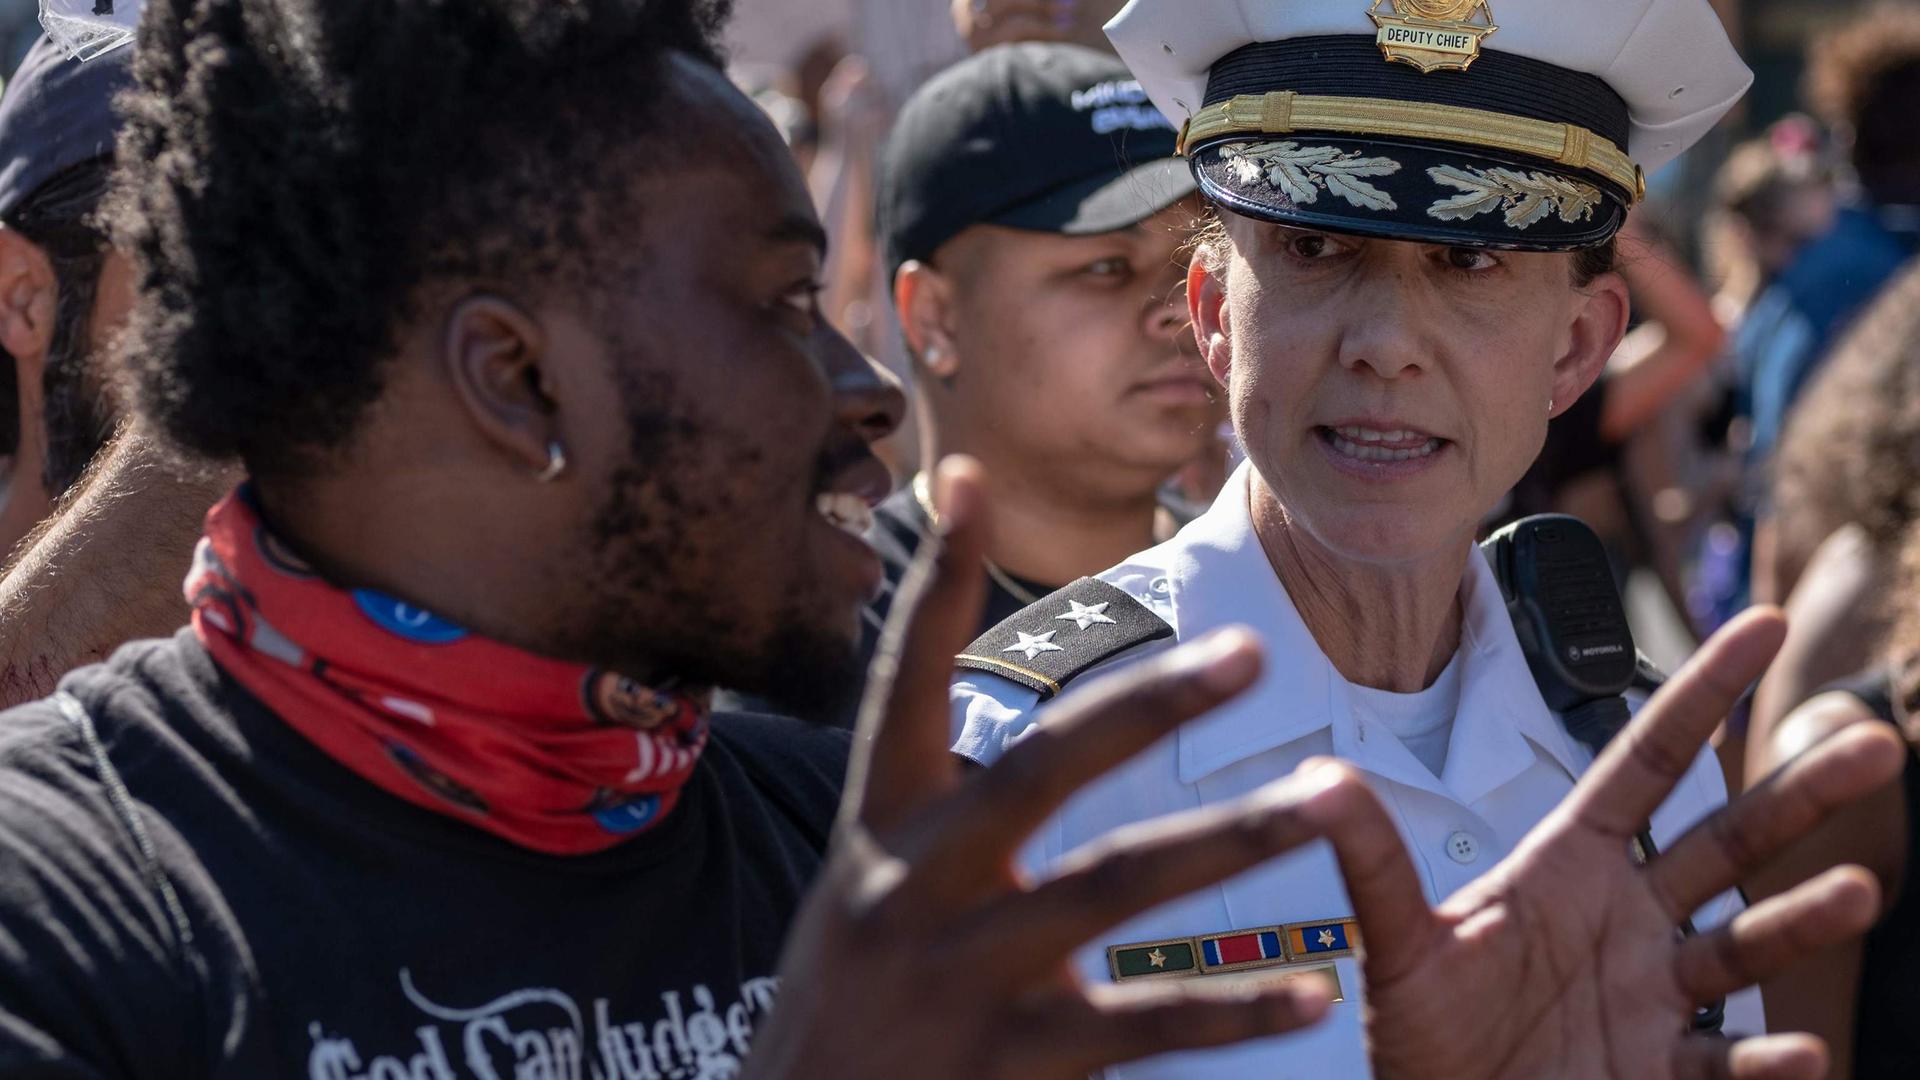 La cheffe du Département de la police de Columbus, Jennifer Knight, n'a pas hésité à rejoindre les manifestants pour exprimer elle aussi son soutien à la lutte contre les violences policières.